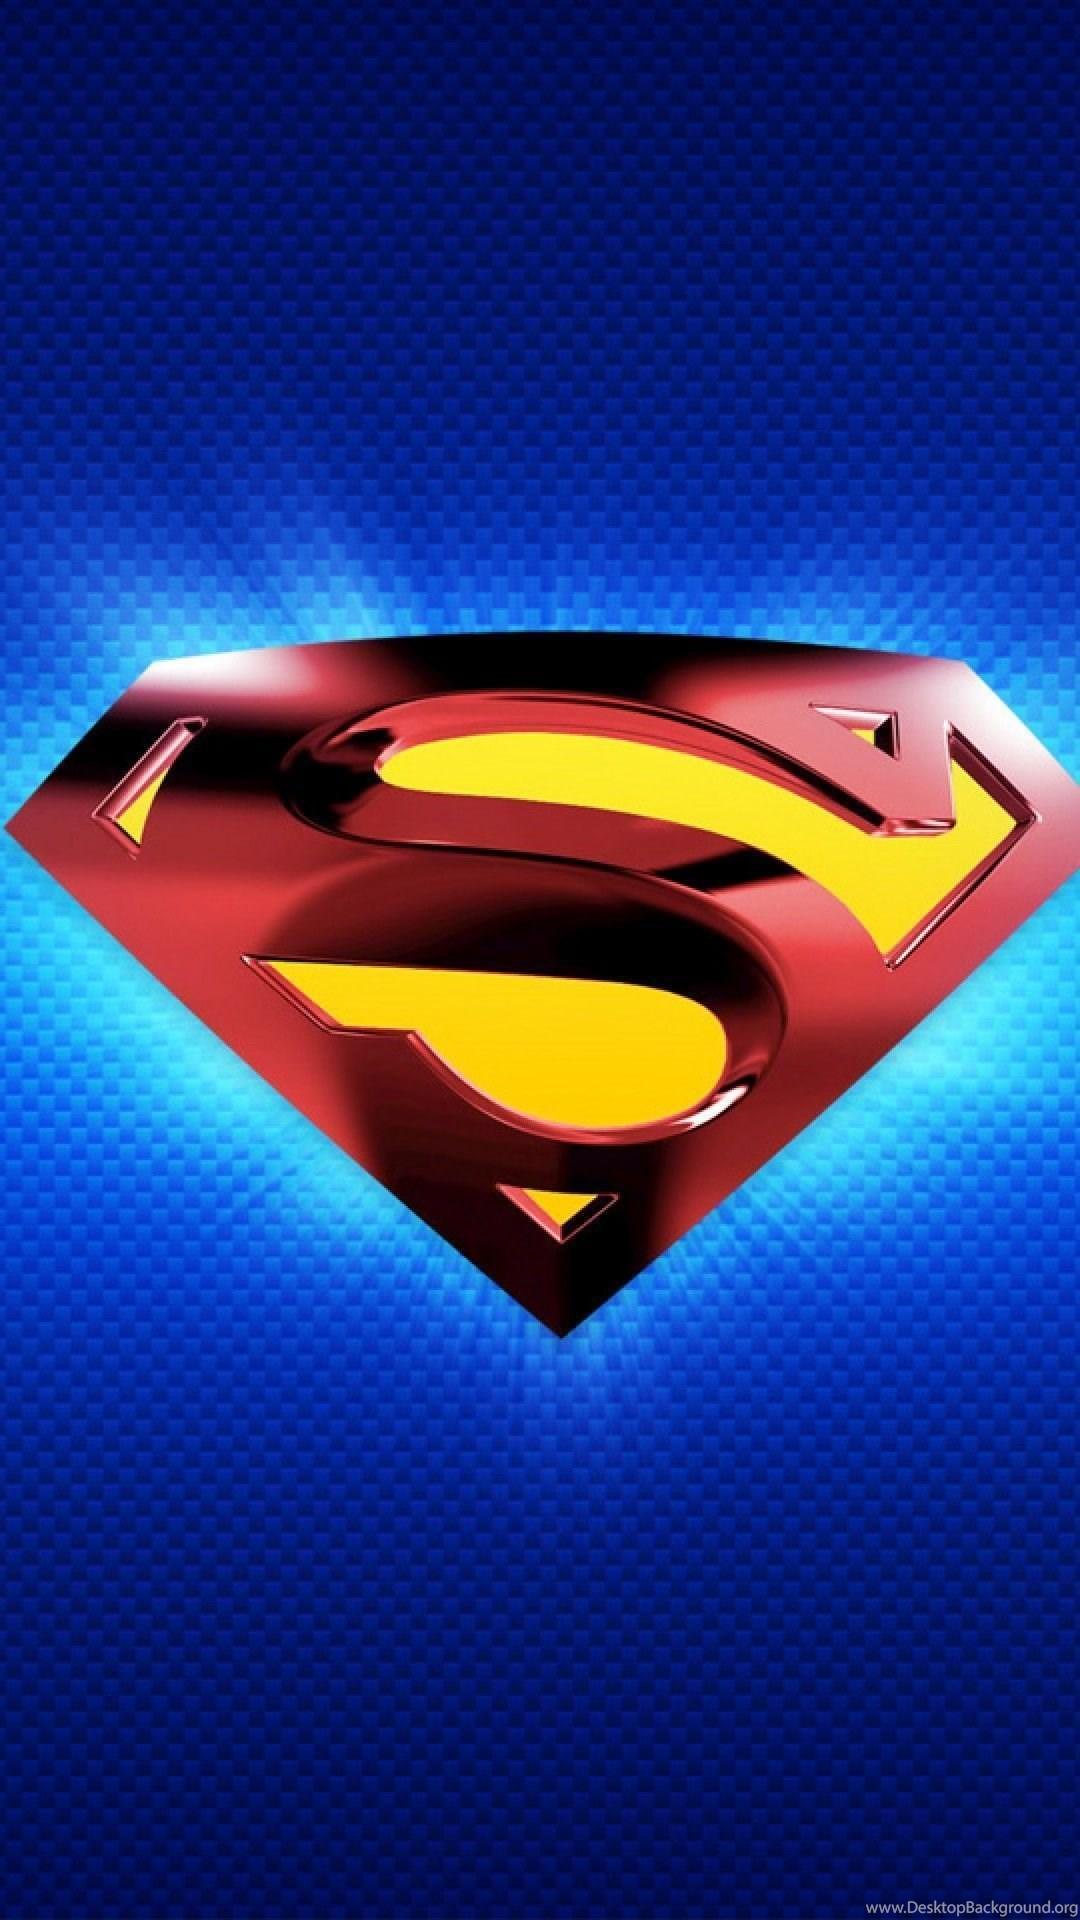 Superman Logo iPhone Wallpapers • Wallpapers IPhone Desktop Backgrounds